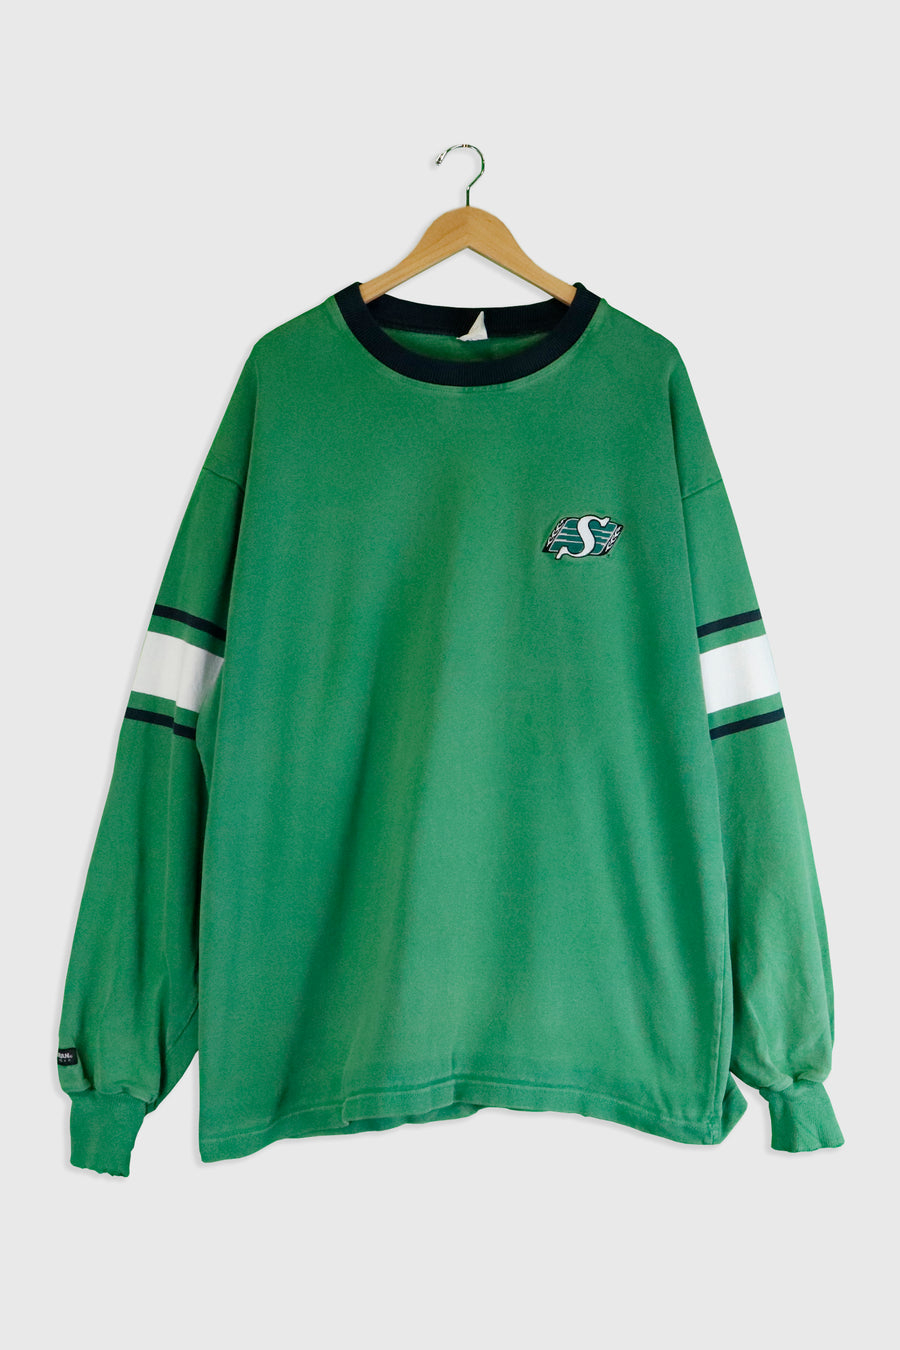 Vintage CFL Saskatchewan Roughriders Embroidered Sweatshirt Sz 2XL